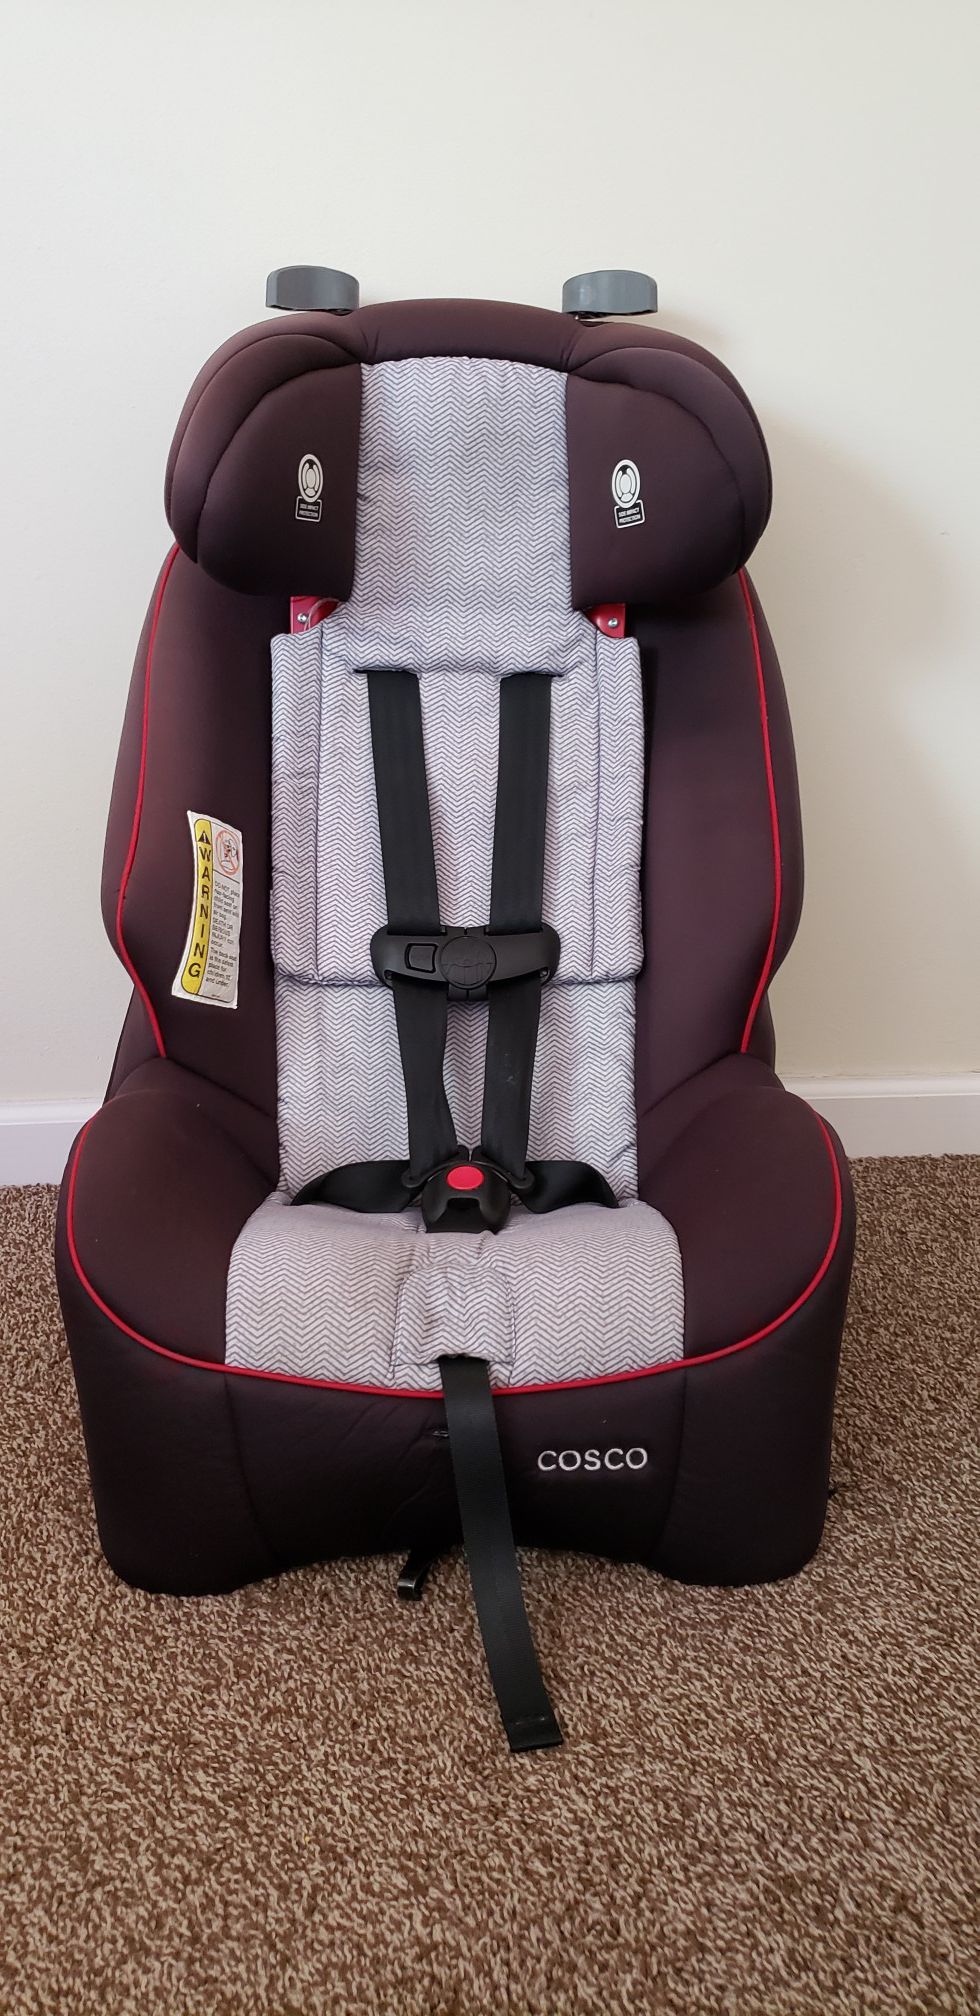 Cosco Easy adjustable car seat